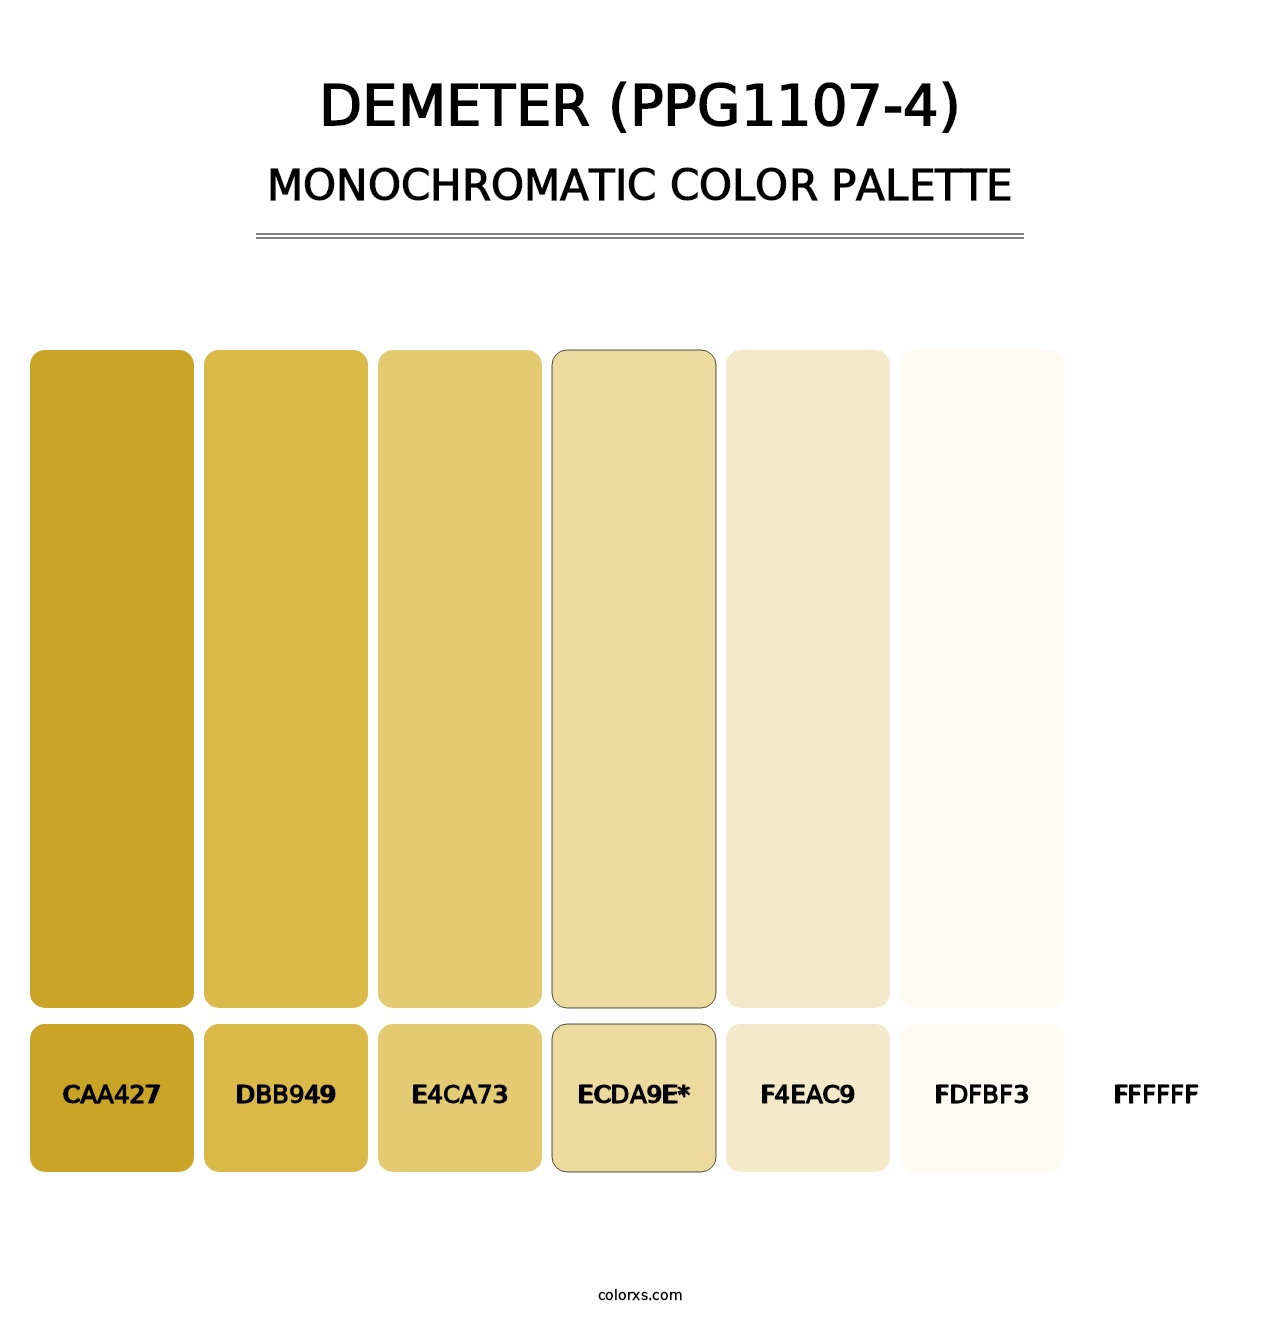 Demeter (PPG1107-4) - Monochromatic Color Palette